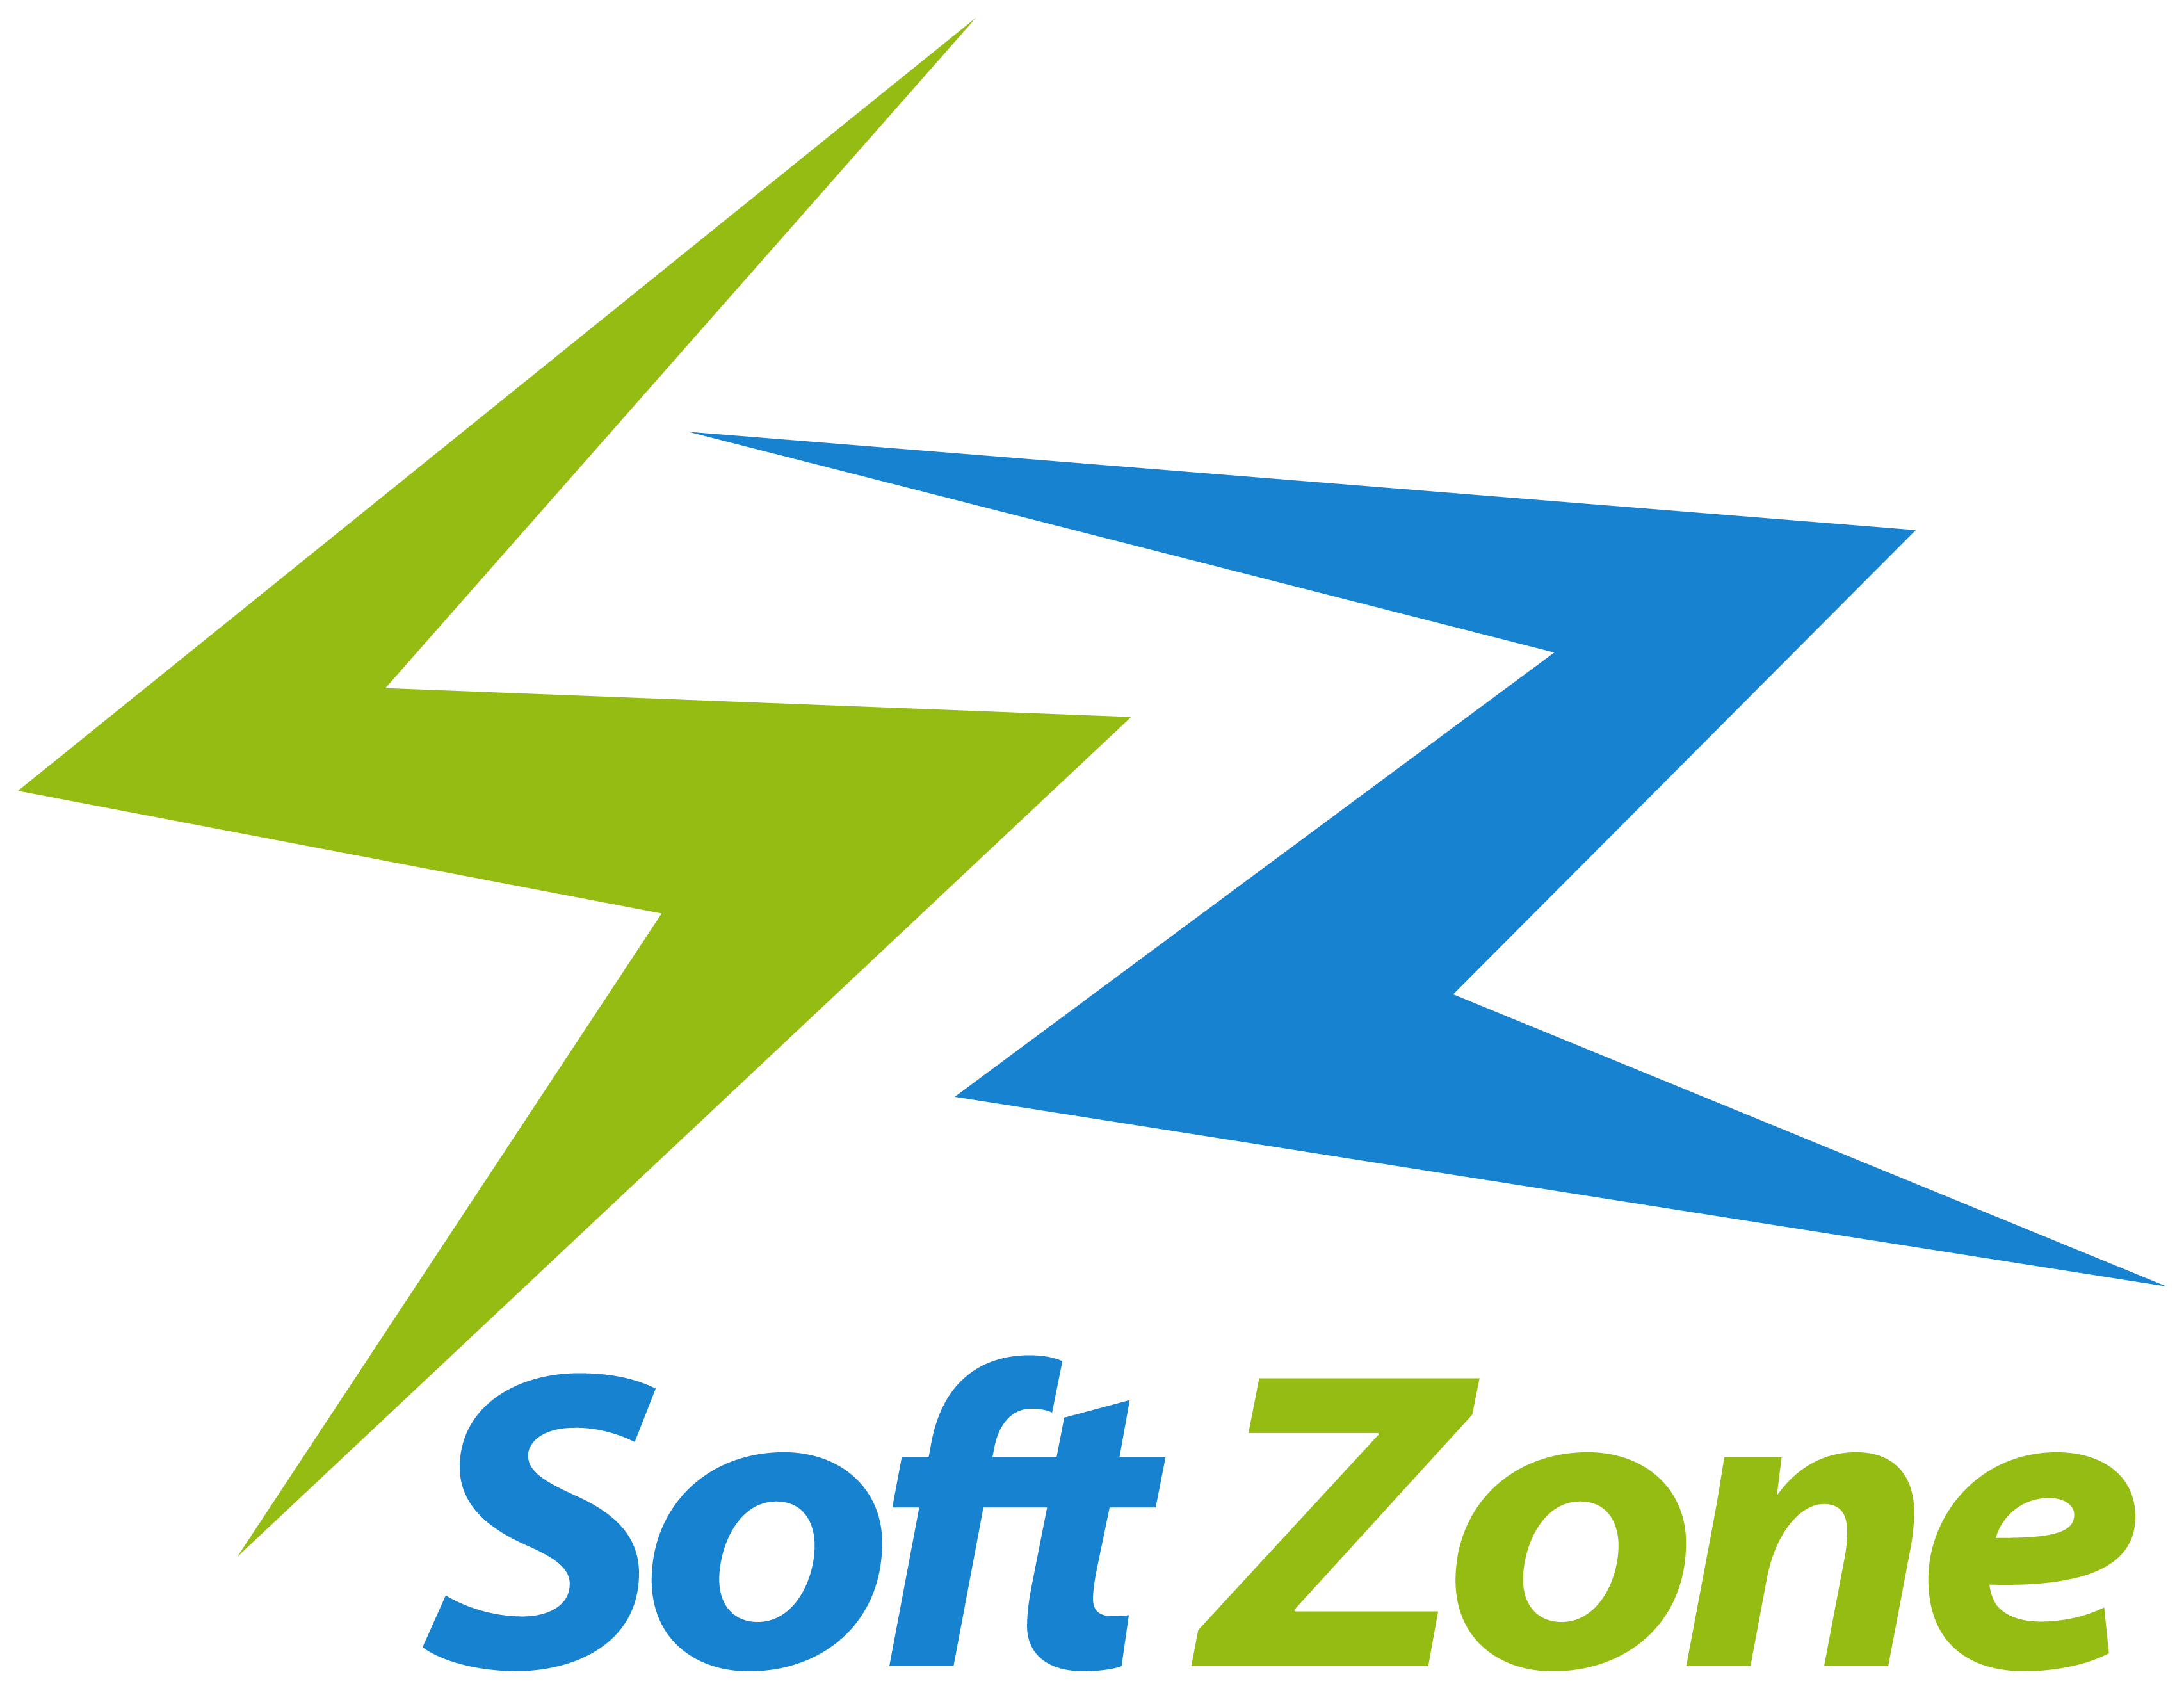 Soft-zone logo